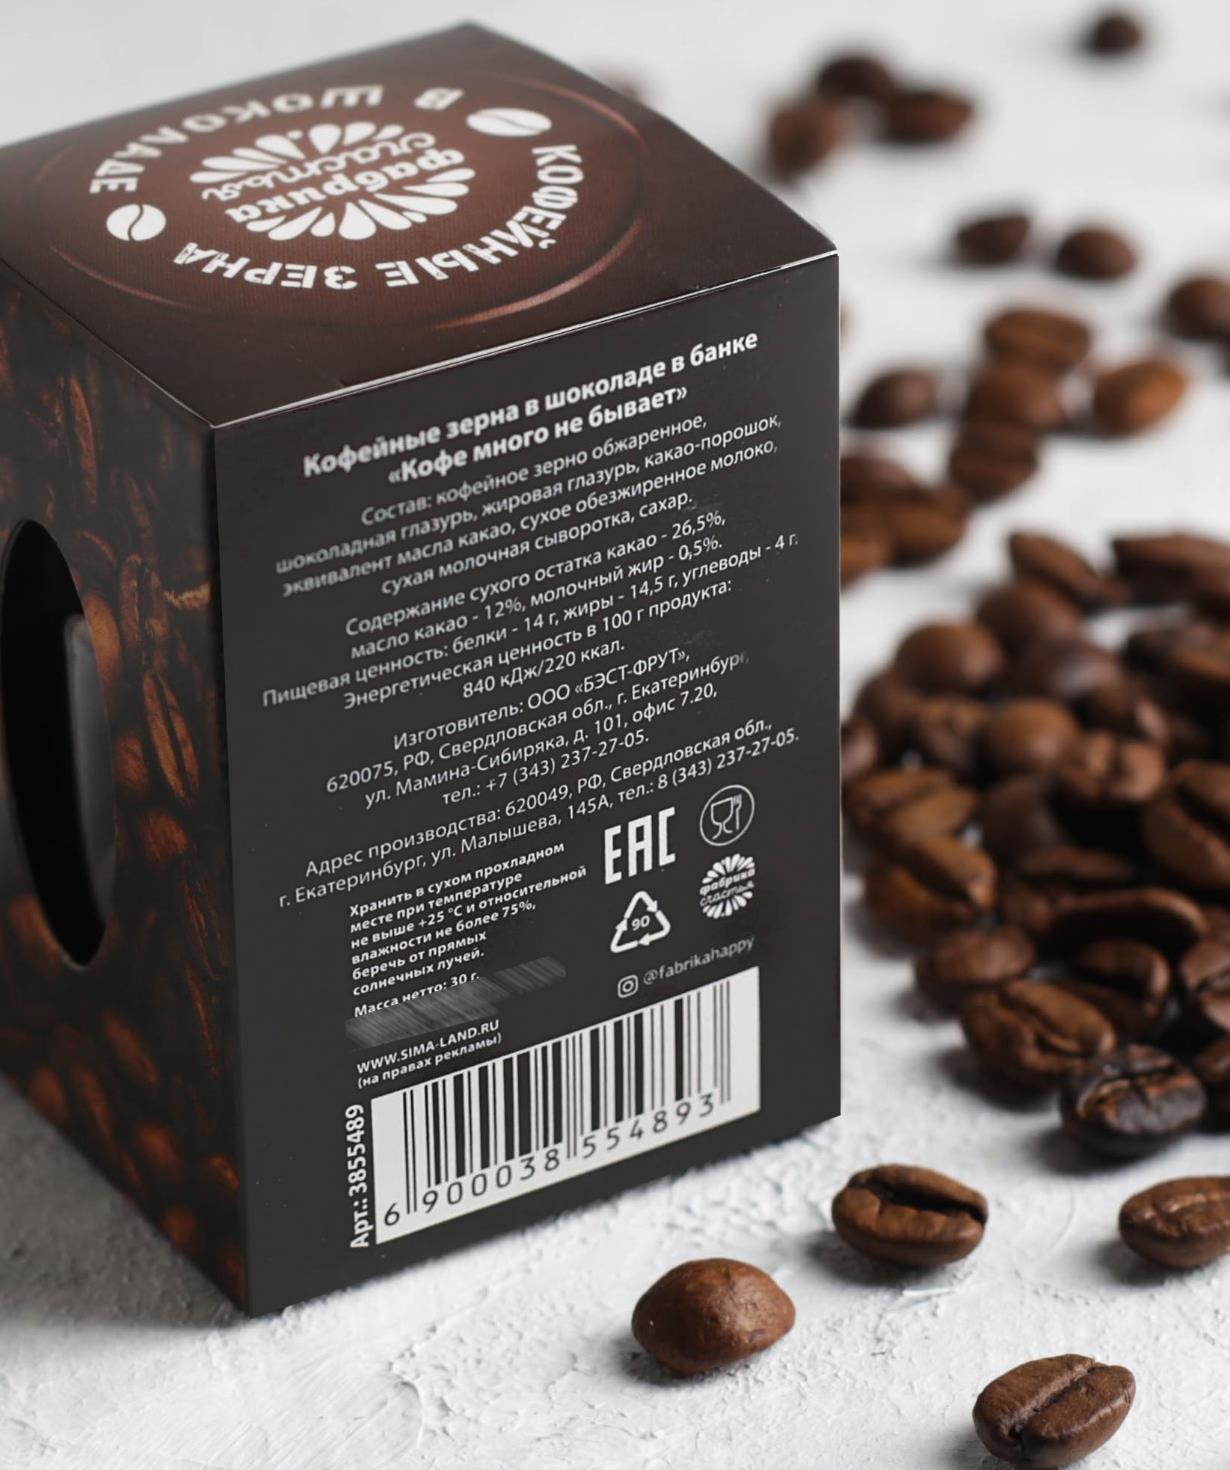 Սուրճի հատիկներ «Jpit.am» շոկոլադապատ, Кофе много не бывает